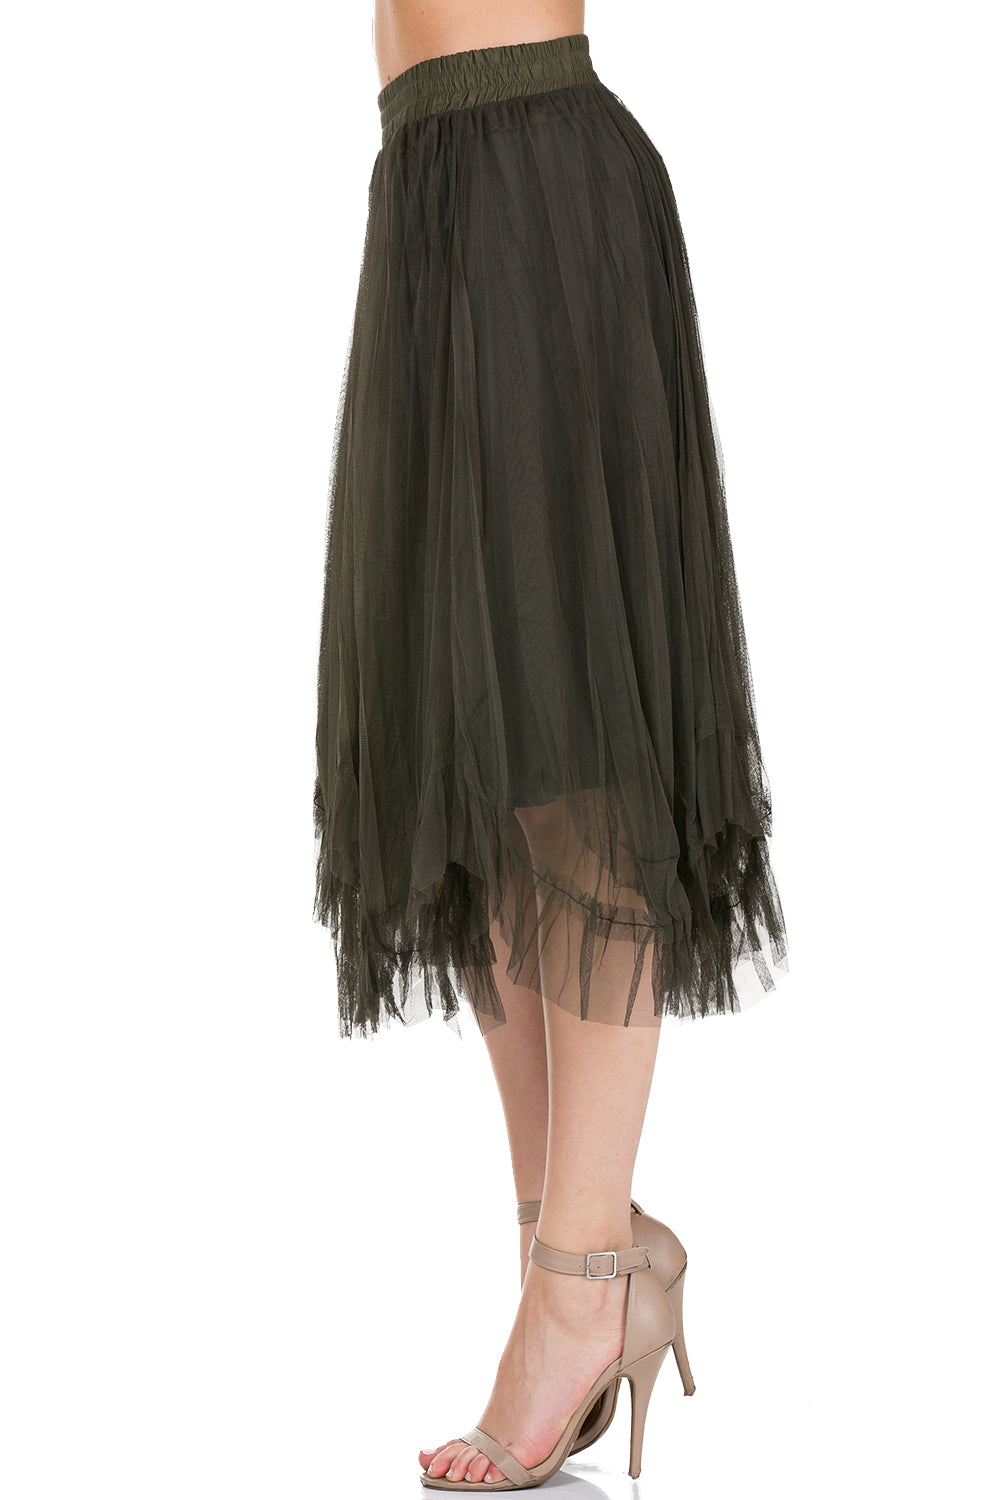 Women Uneven Hem Tutu Tulle Ballet Skirt for Dances and Parties - Shop Lev